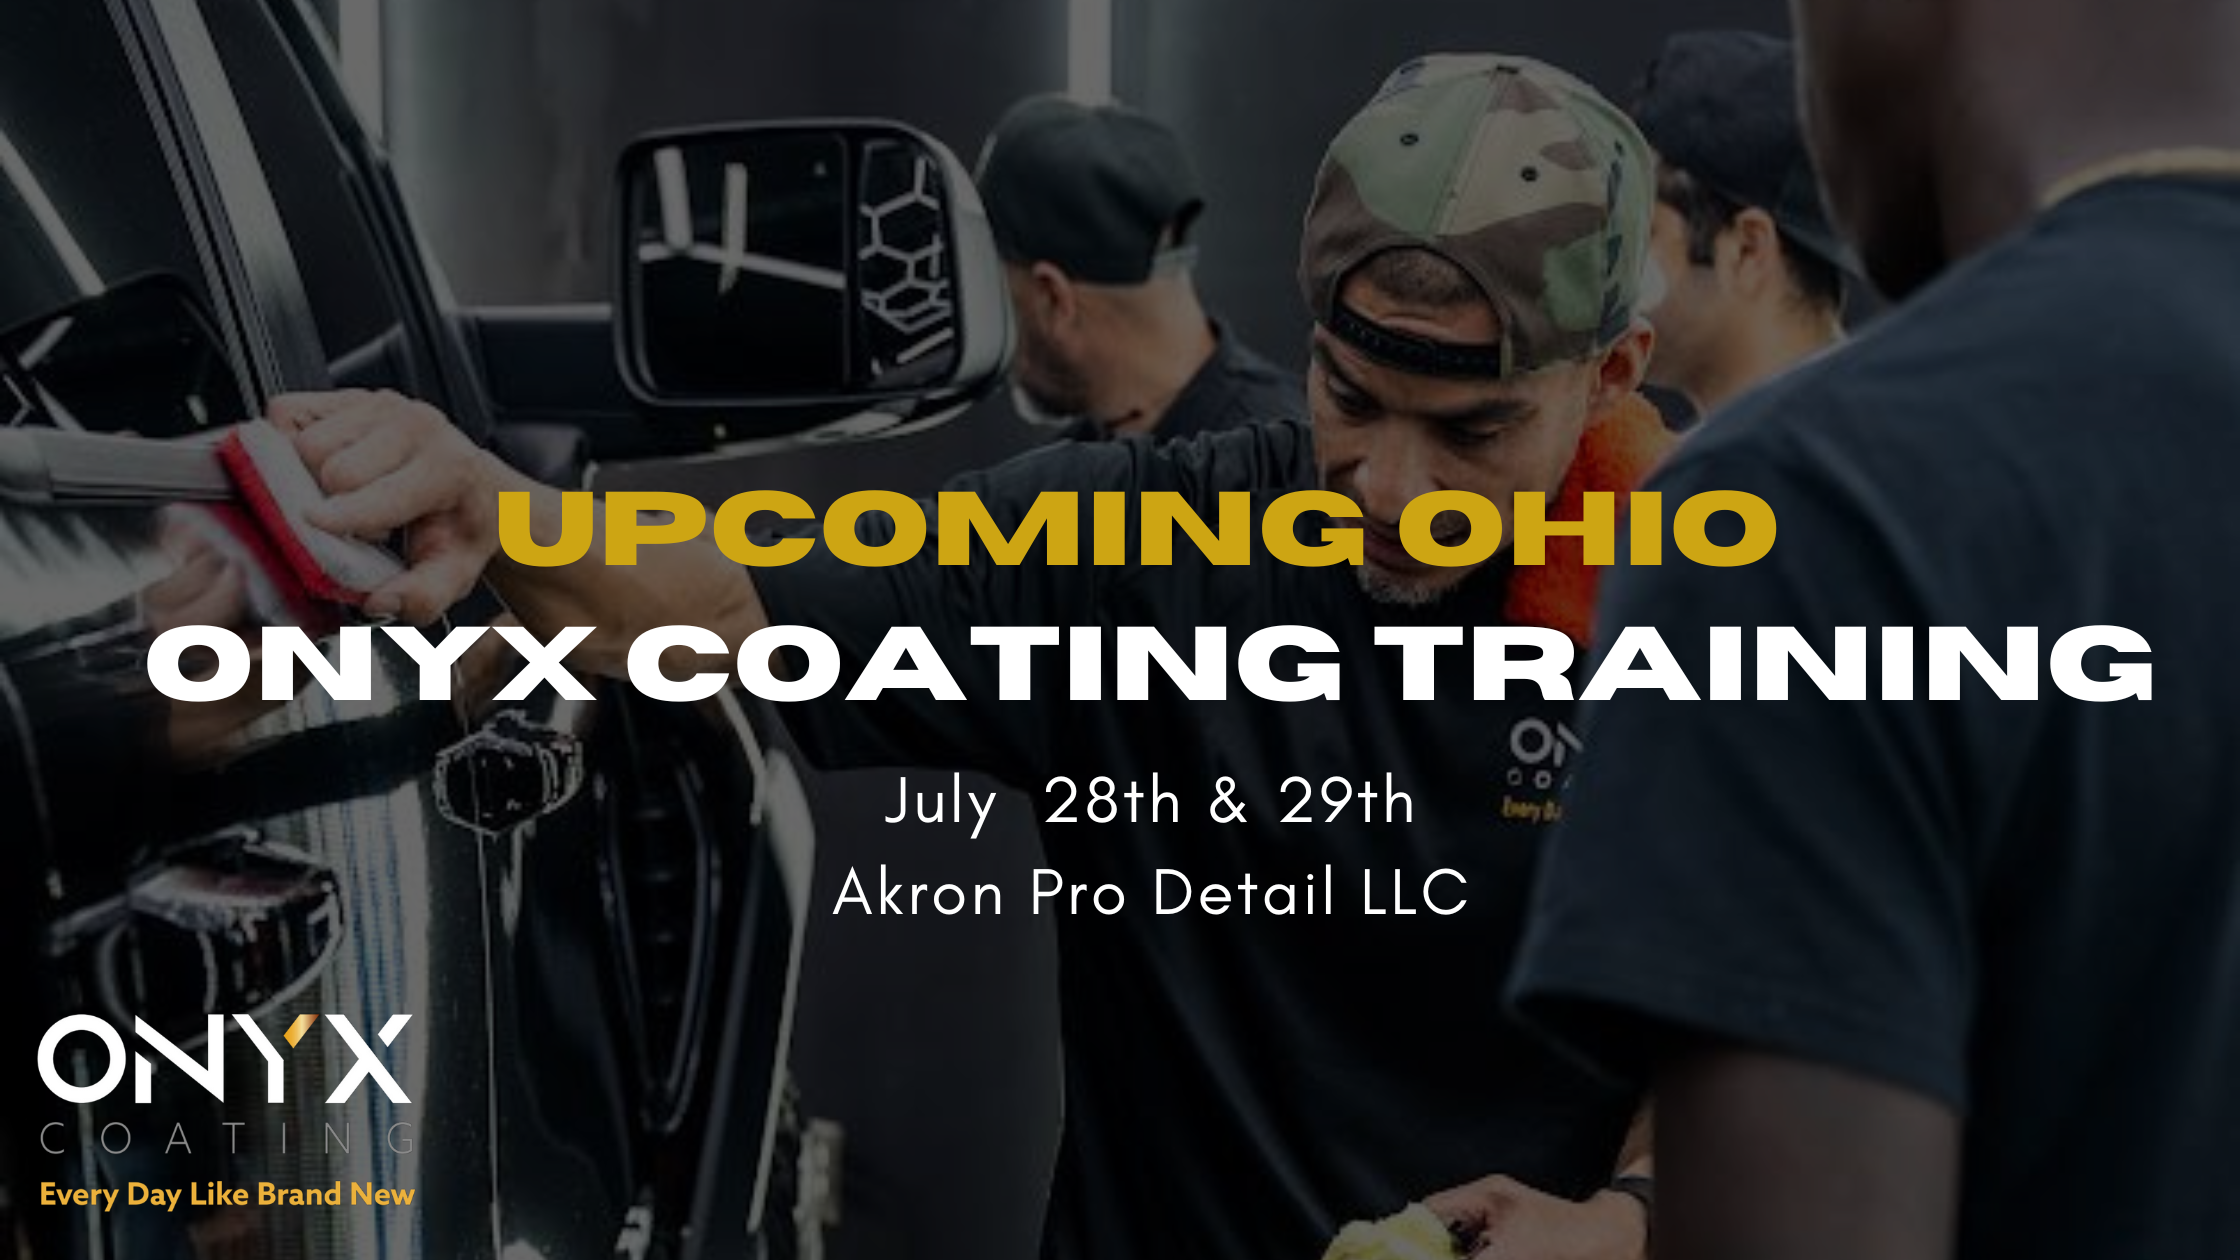 ONYX COATING training in Ohio